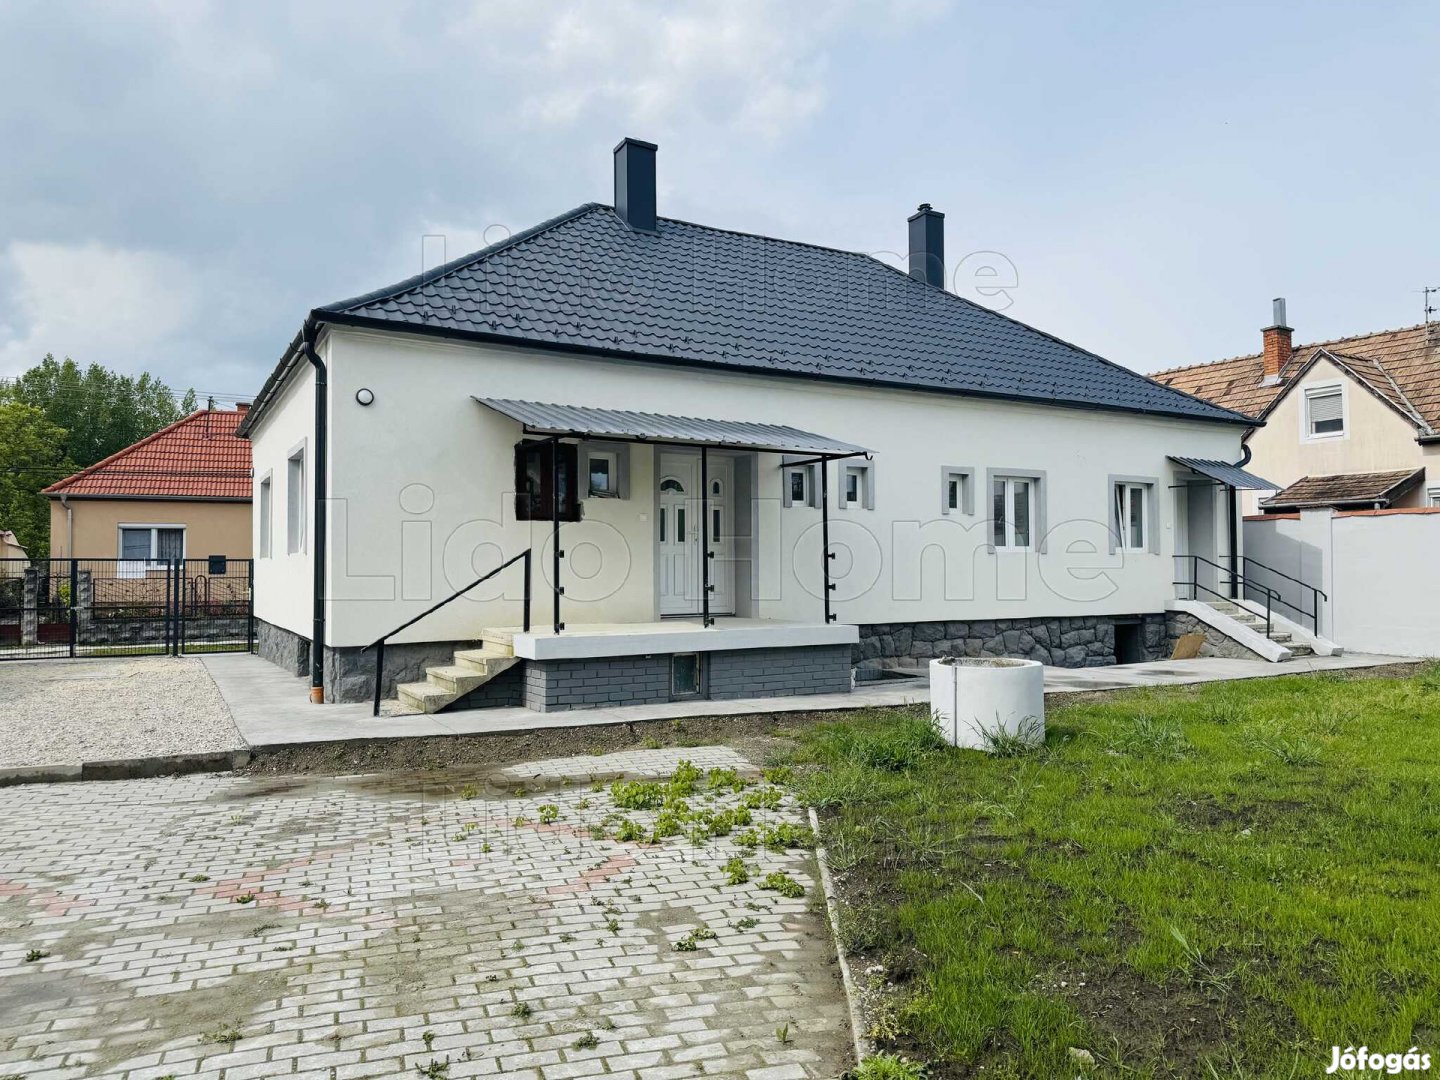 Eladó egy felújított lakás/házrész Győrzámolyon!